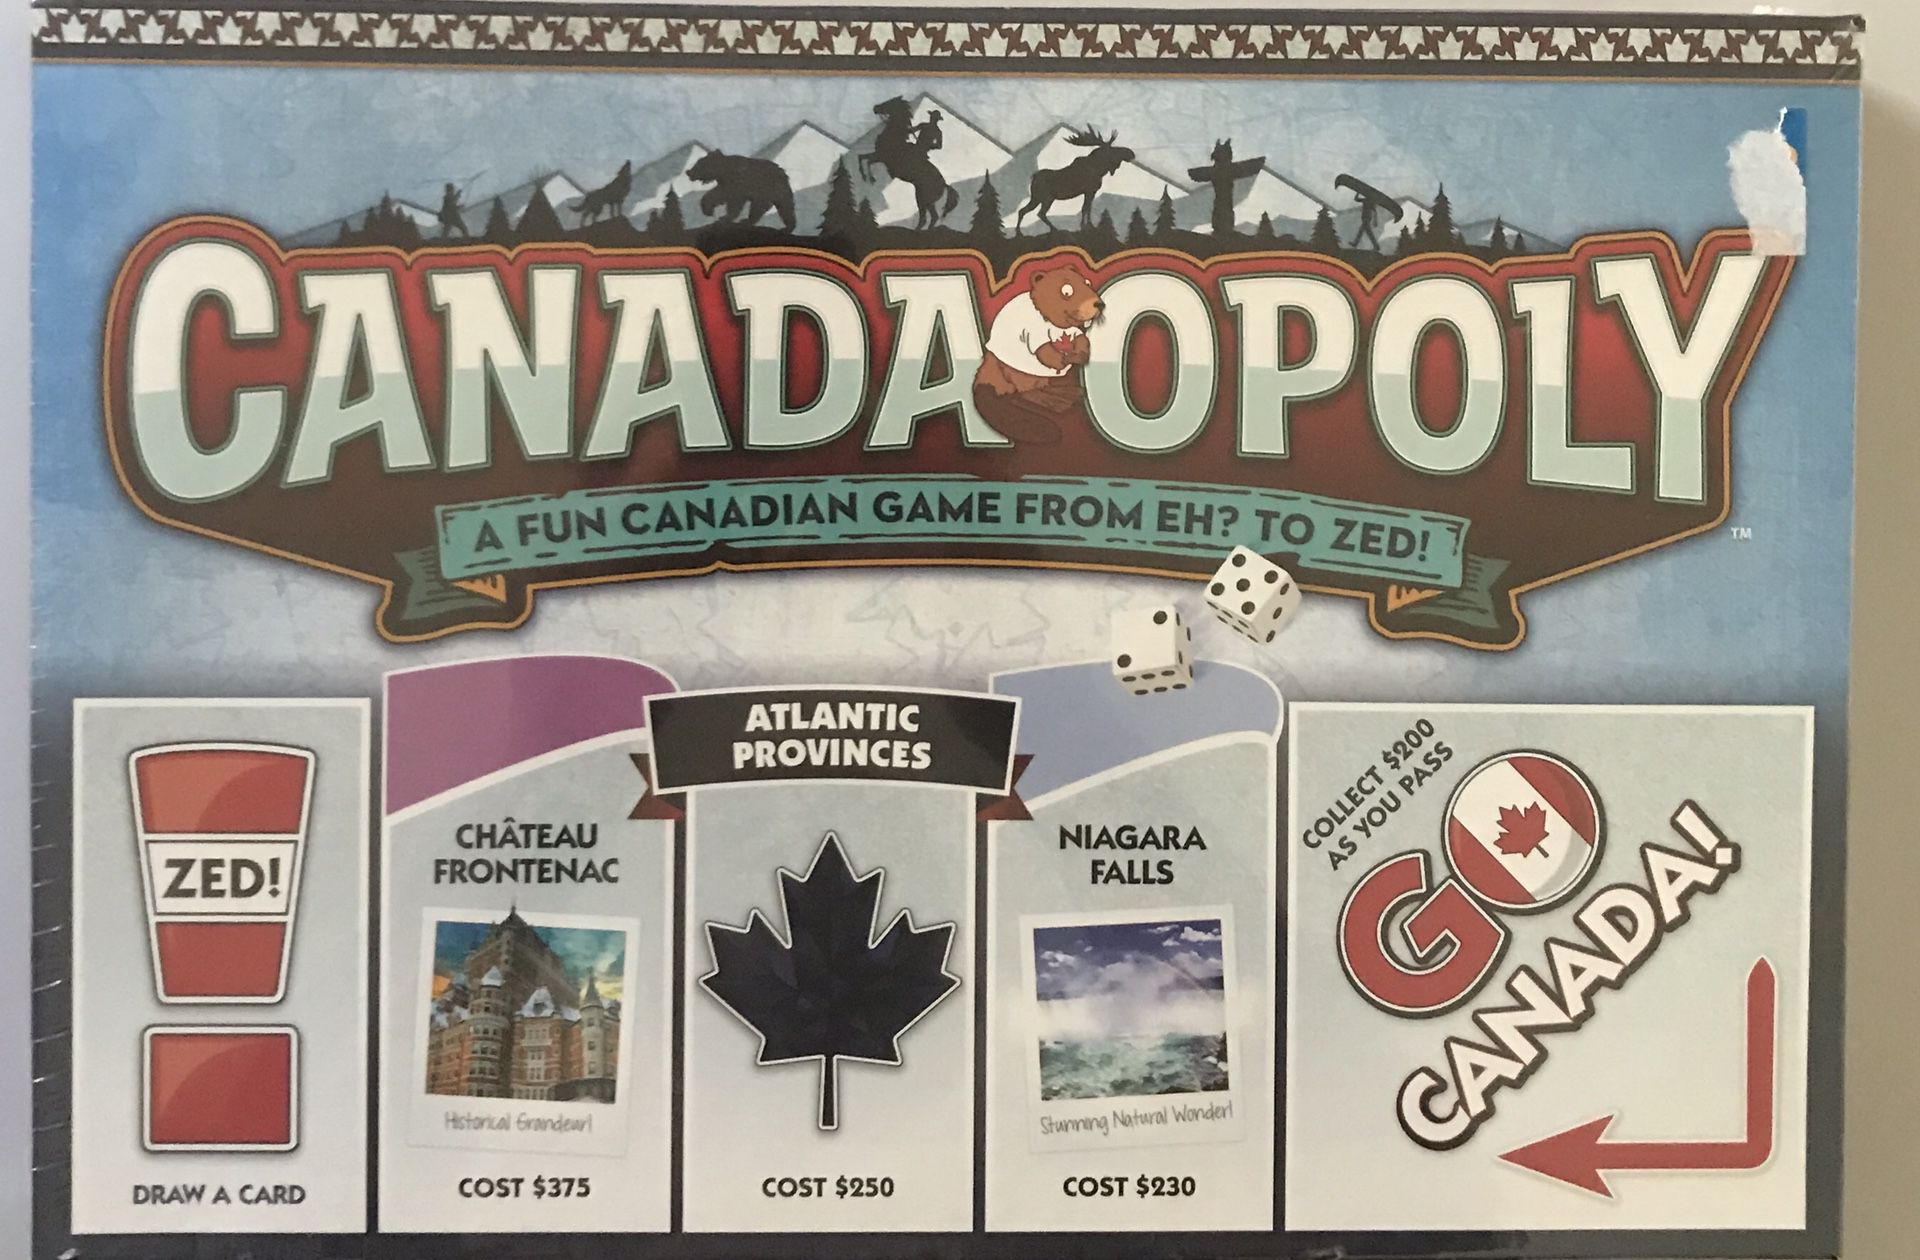 Canada Opoly fun board game